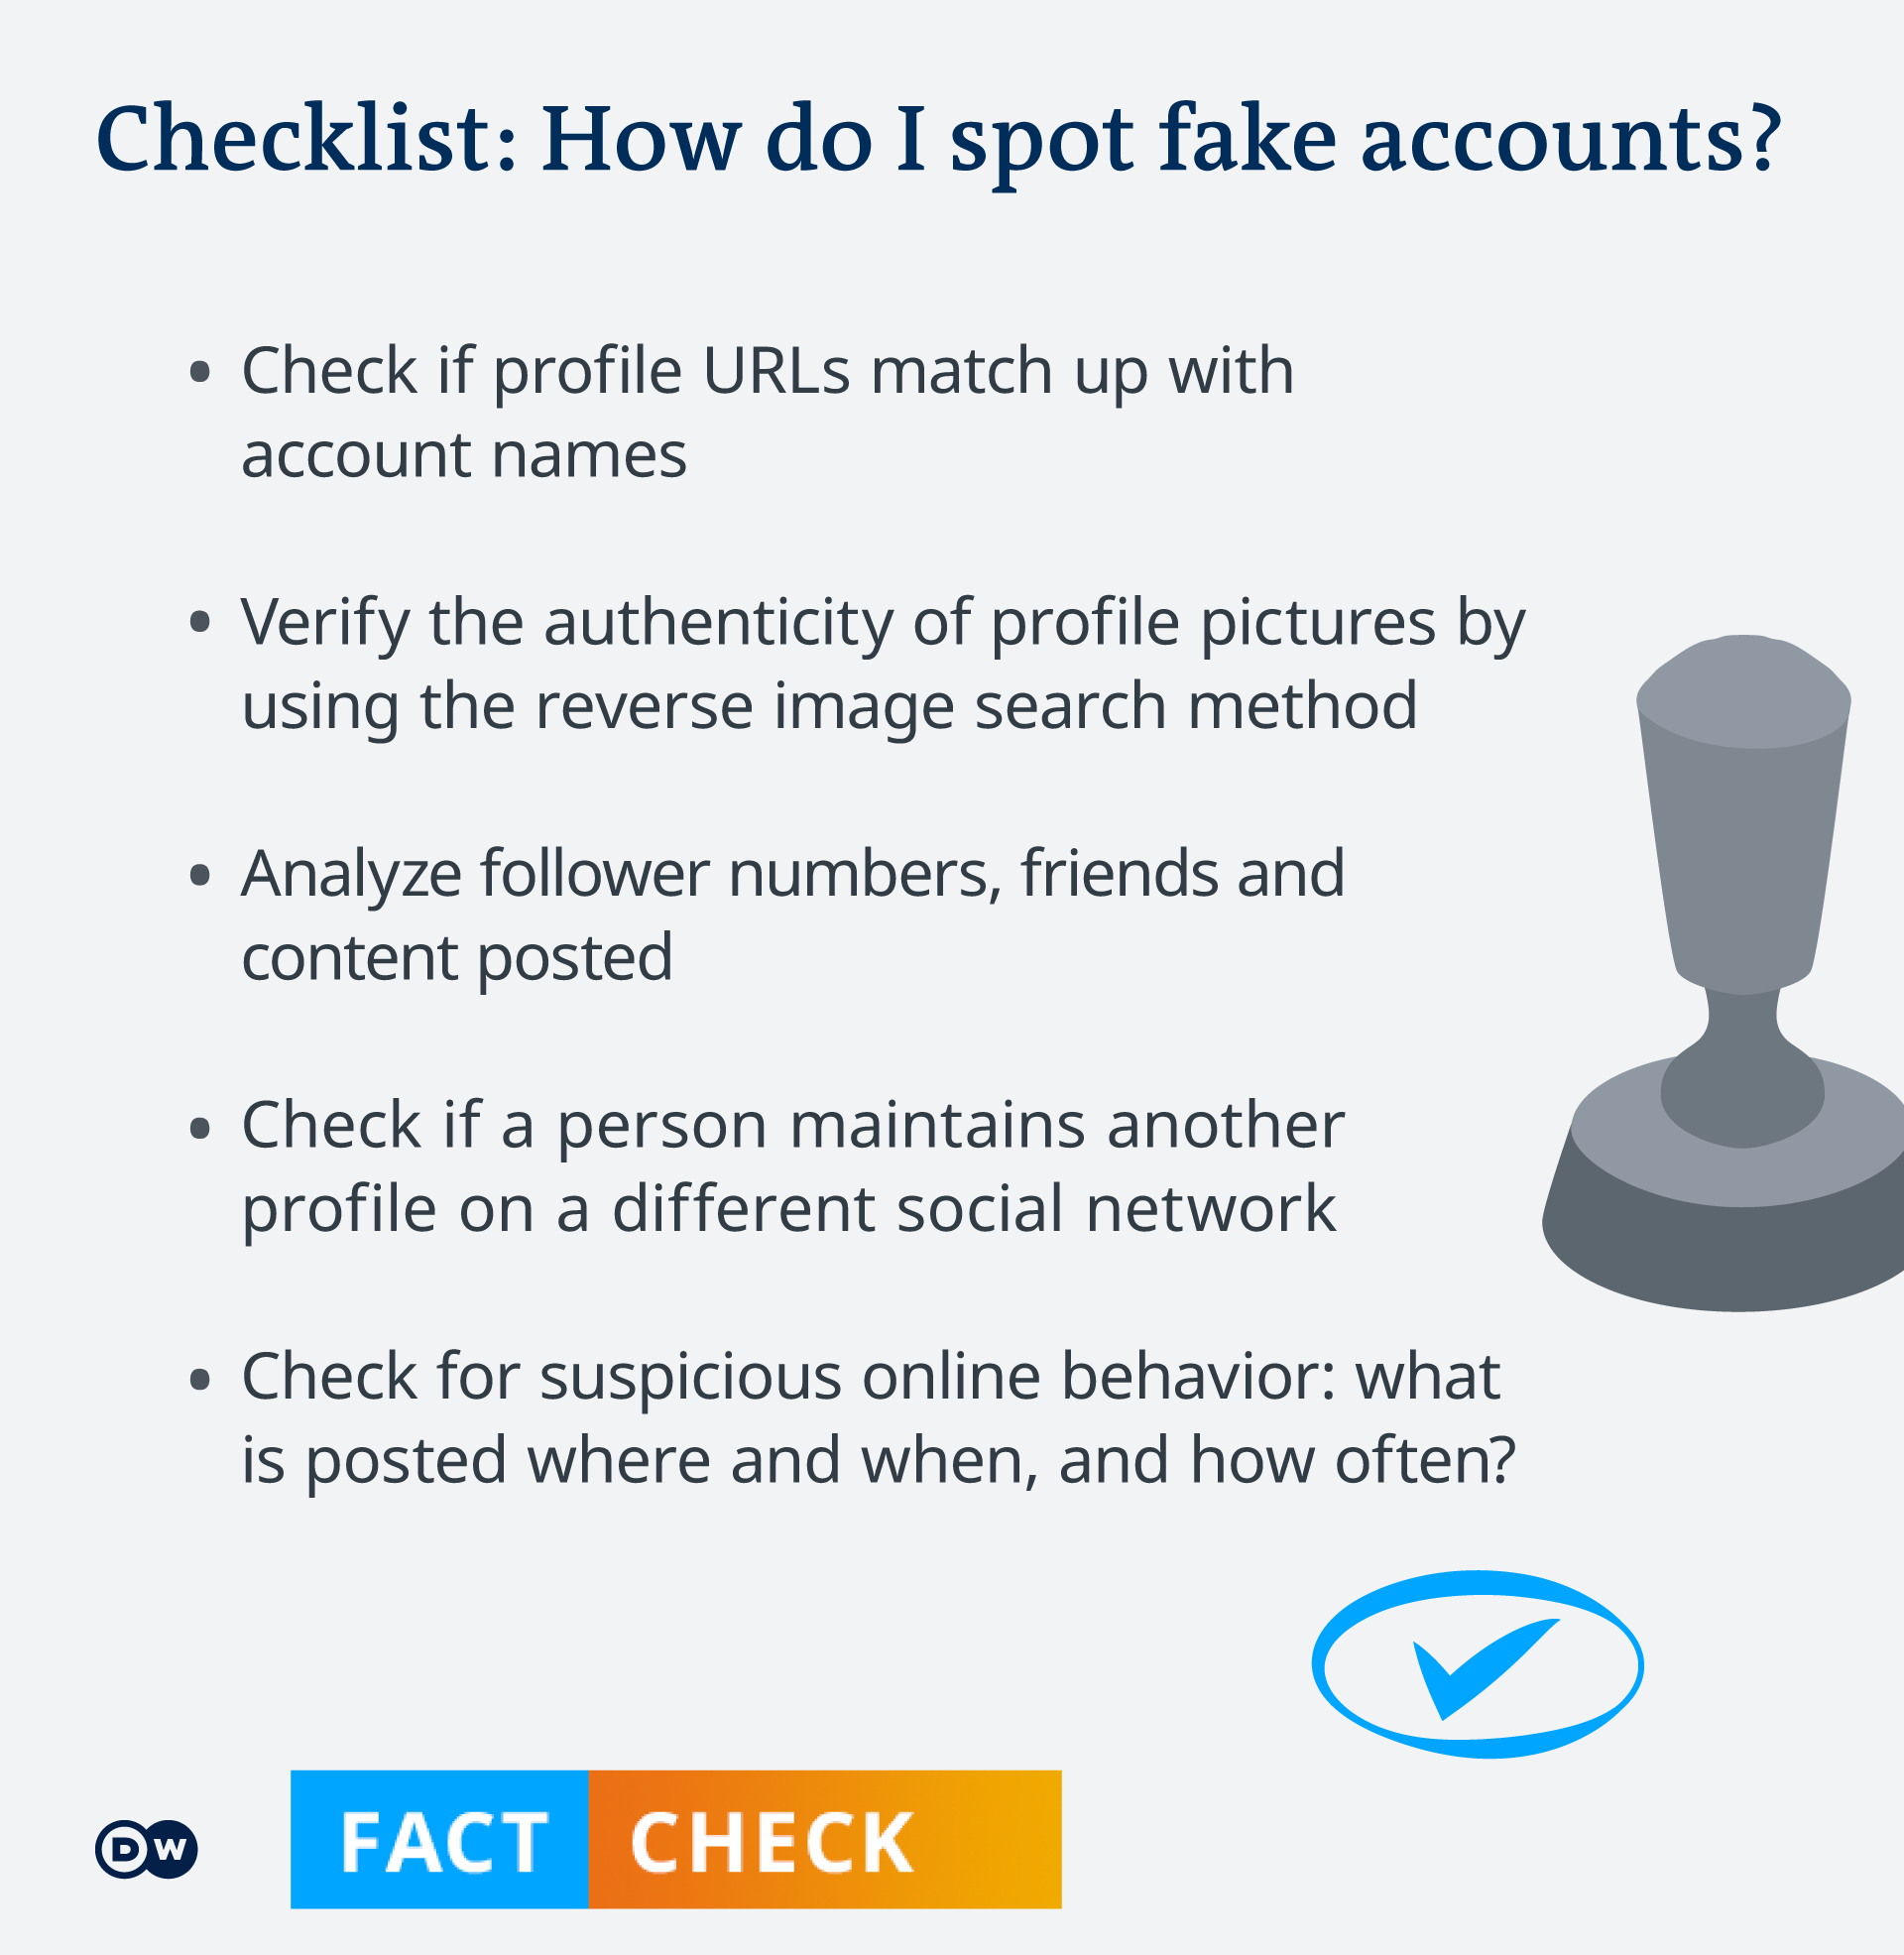 Checklist: How do I spot fake accounts?